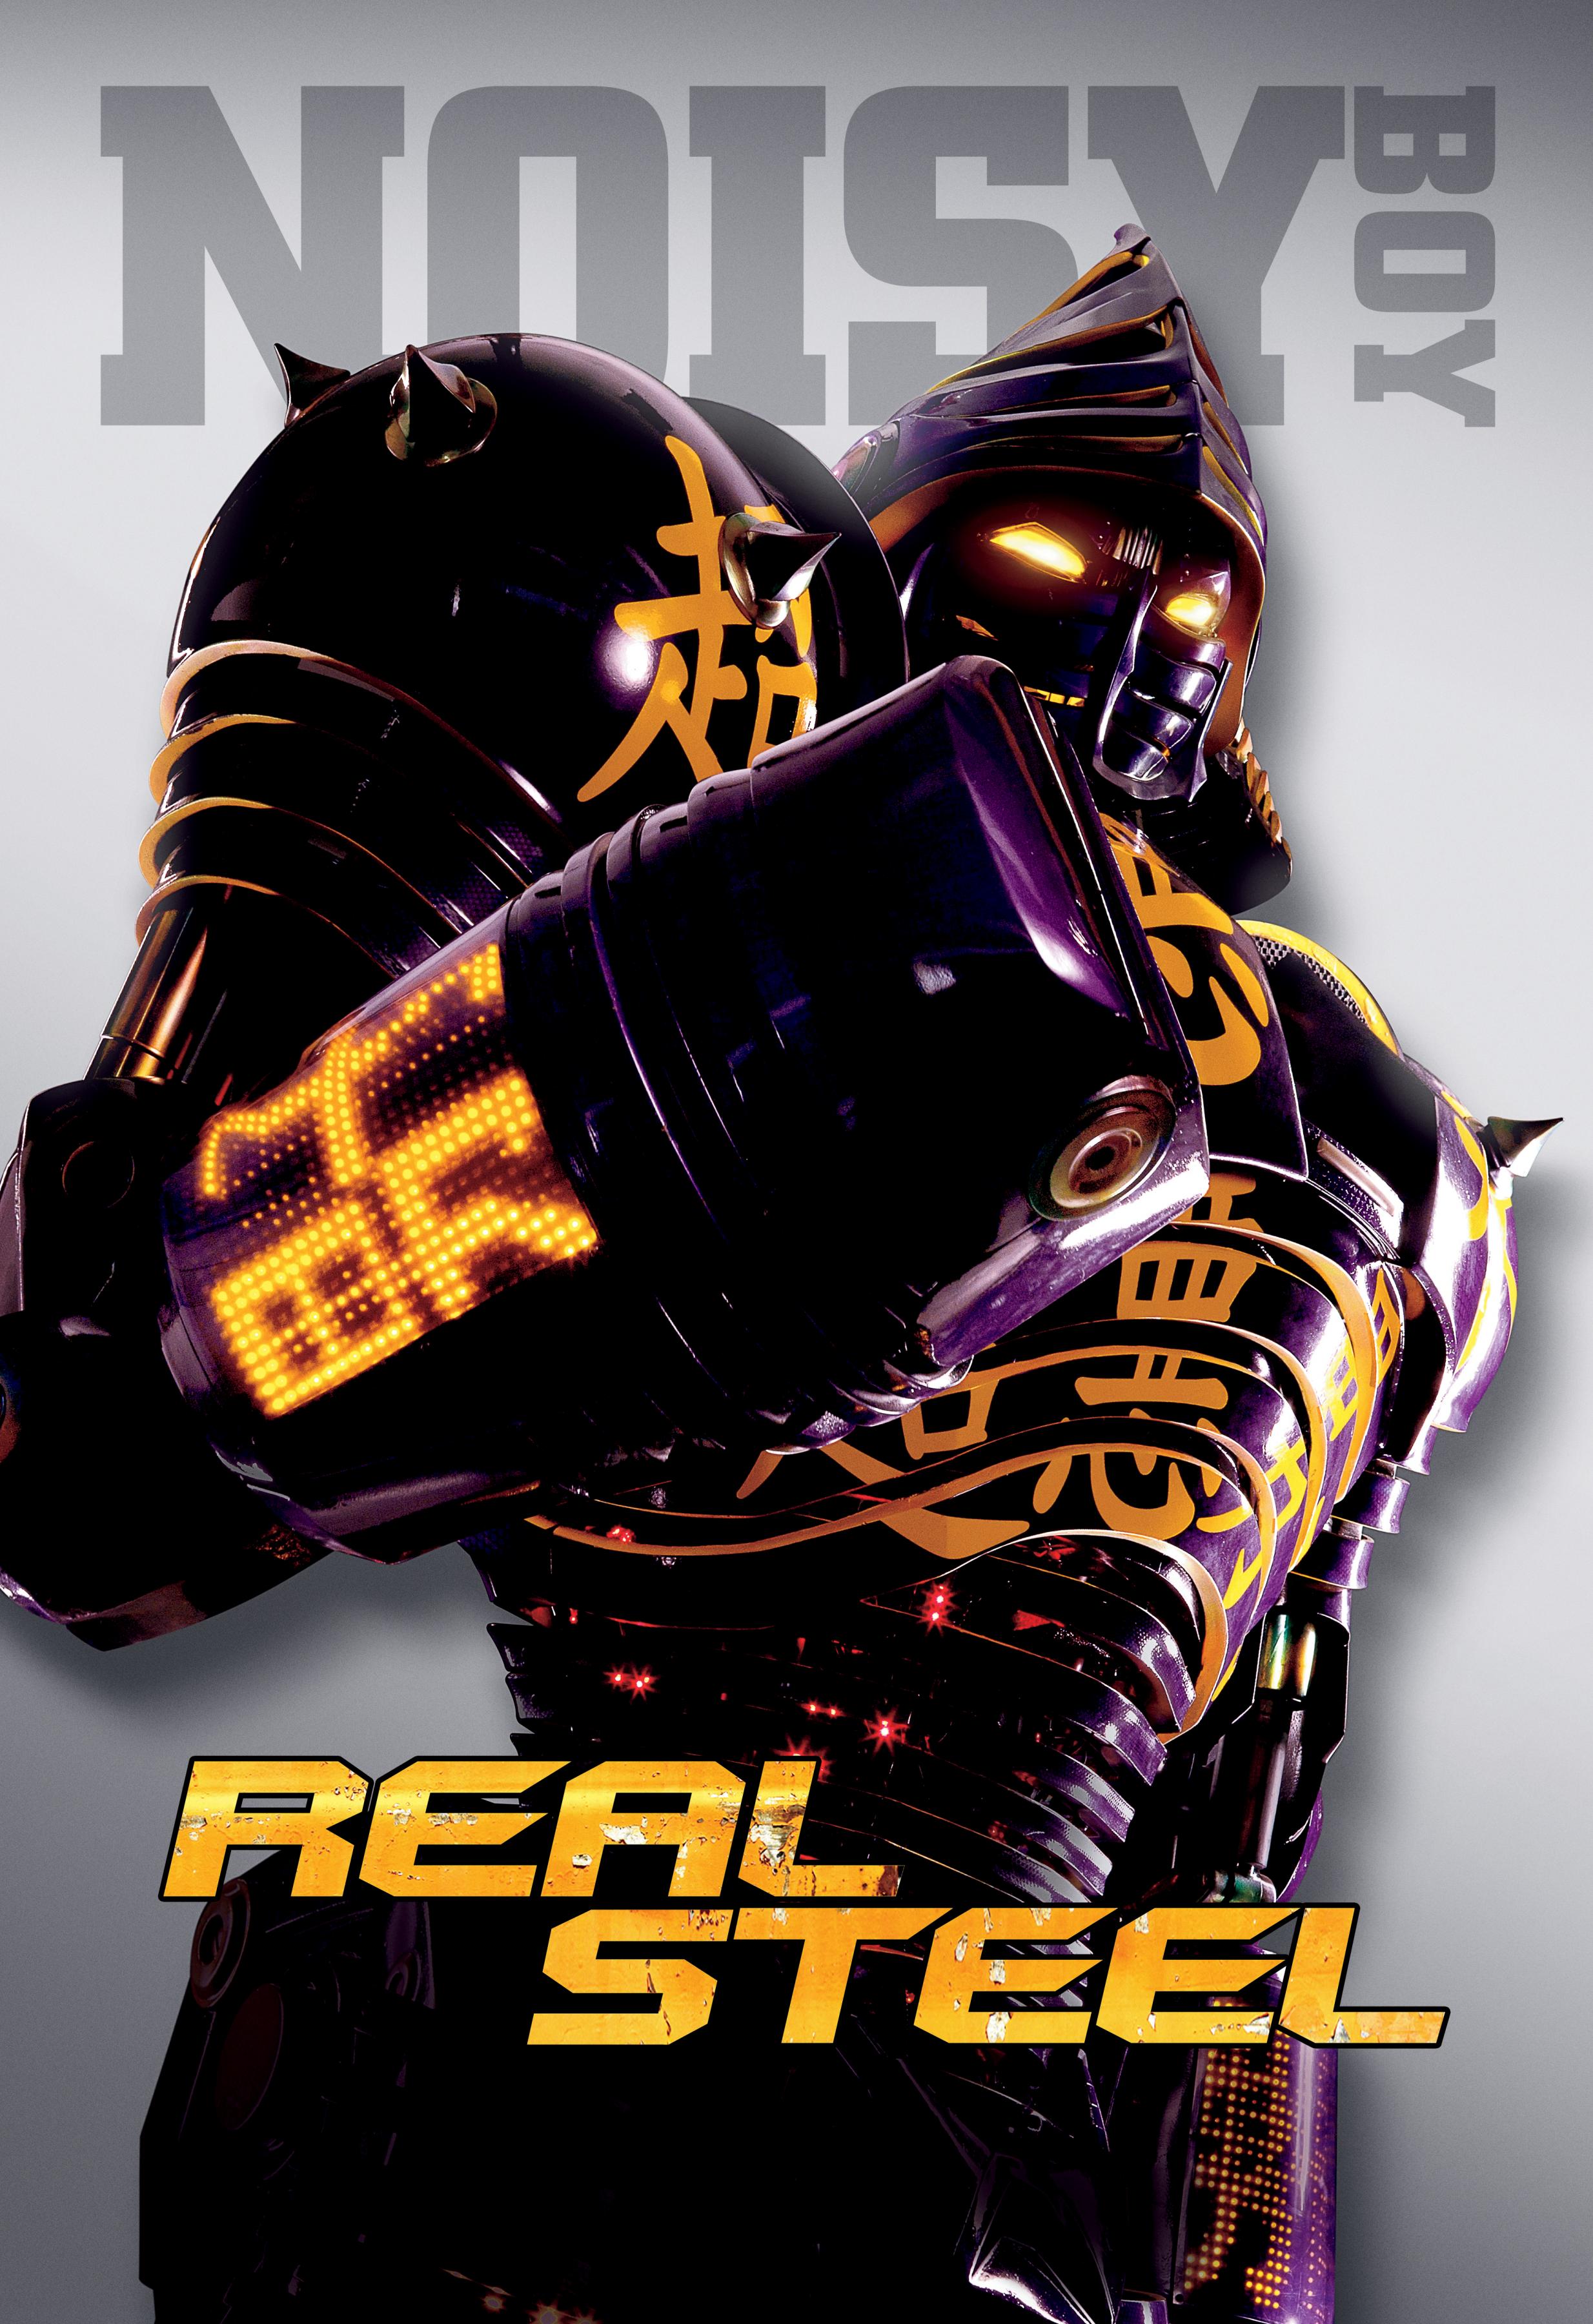 Постер фильма Живая сталь | Real Steel